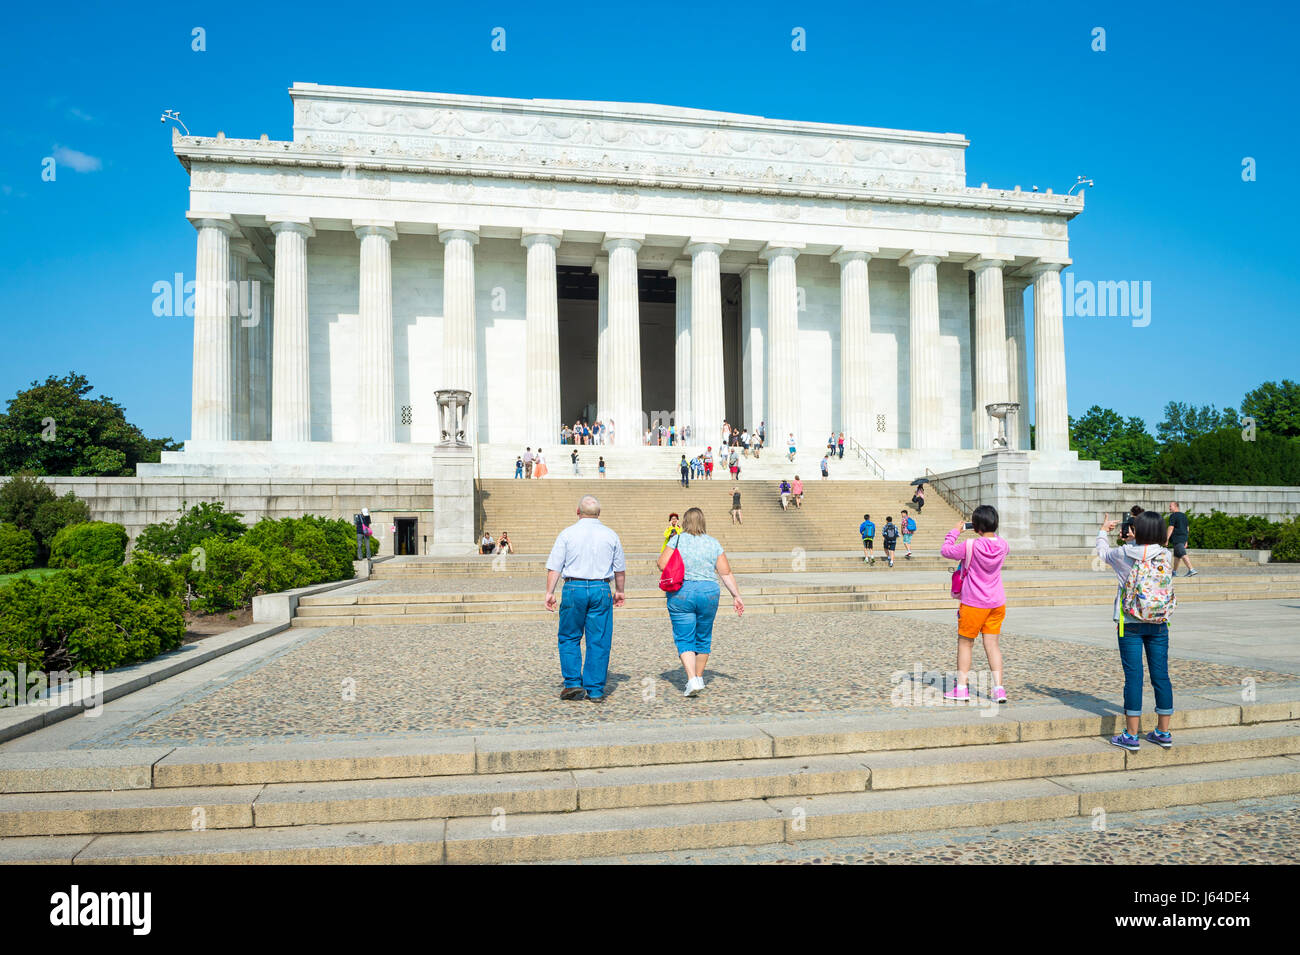 WASHINGTON D.C. - Luglio 31, 2014: arresto di visitatori all'ingresso del Lincoln Memorial per scattare le foto. Foto Stock